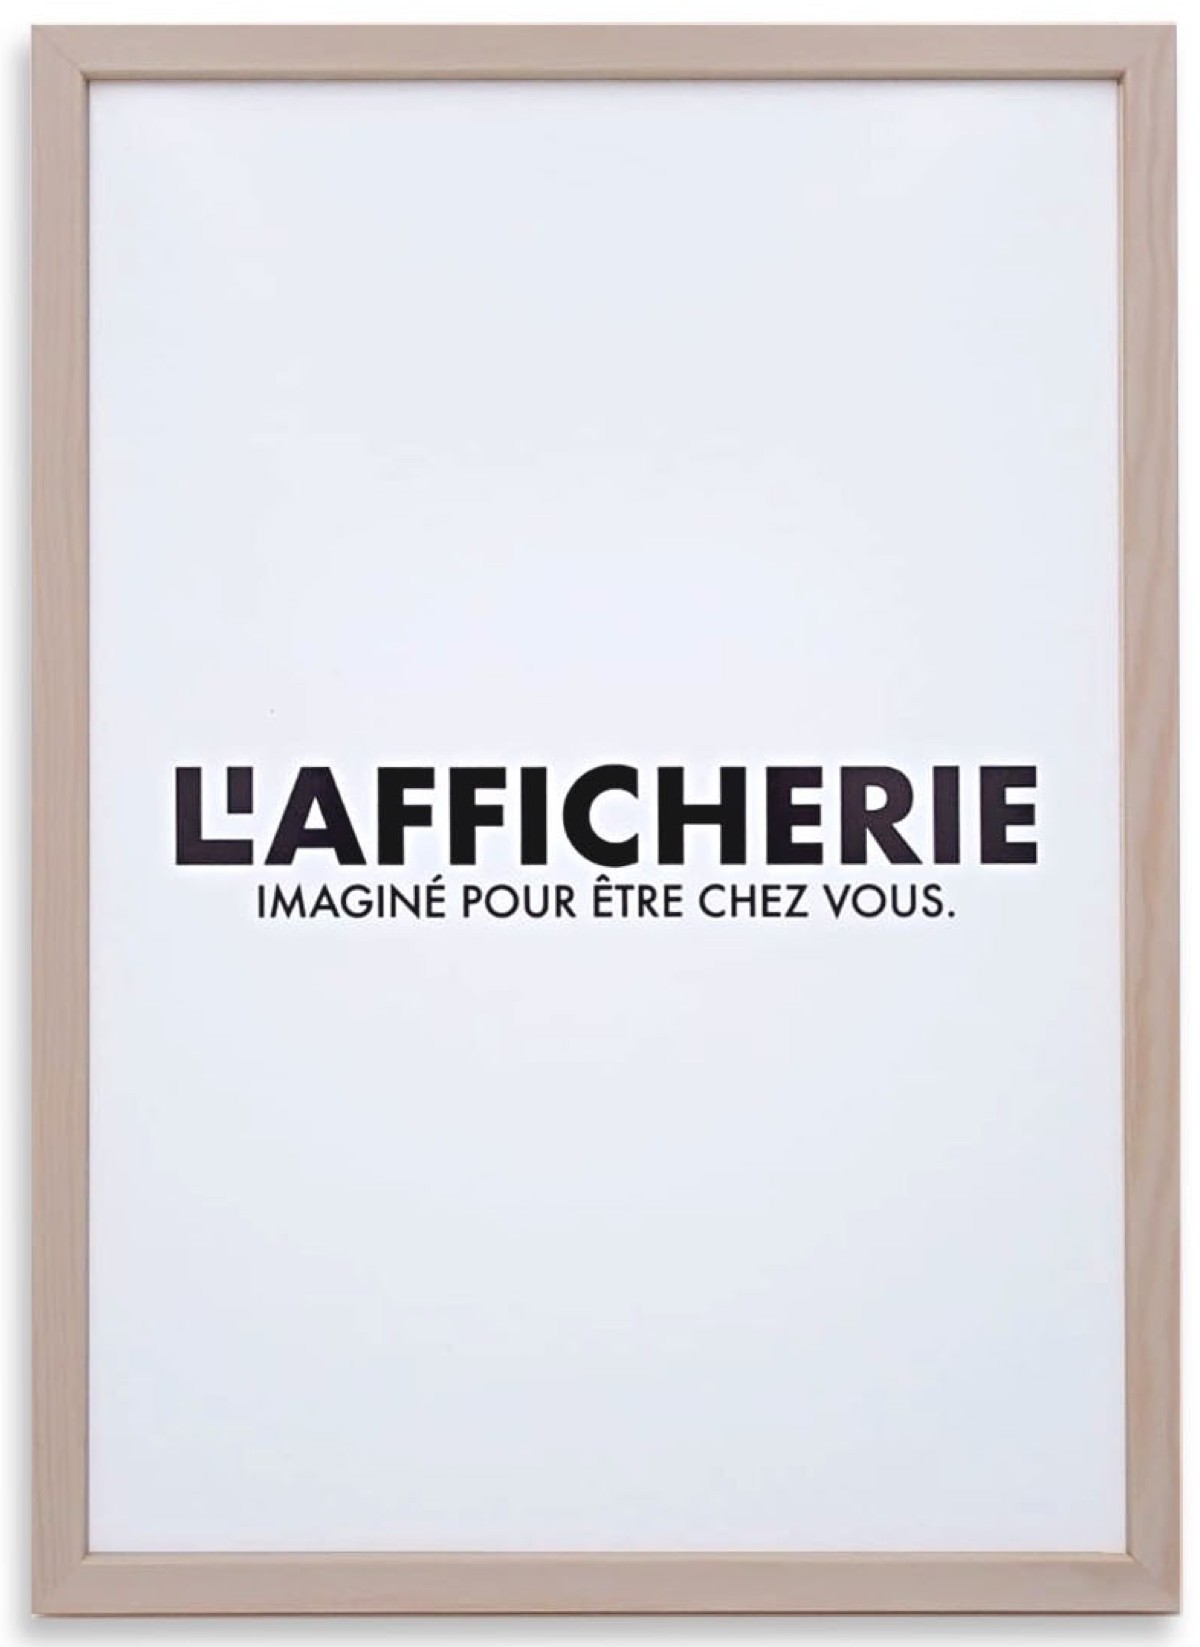 Cadre photo double face en bois brut pour 2 affiches de dimensions 60 x 40  cm - Fabrication française